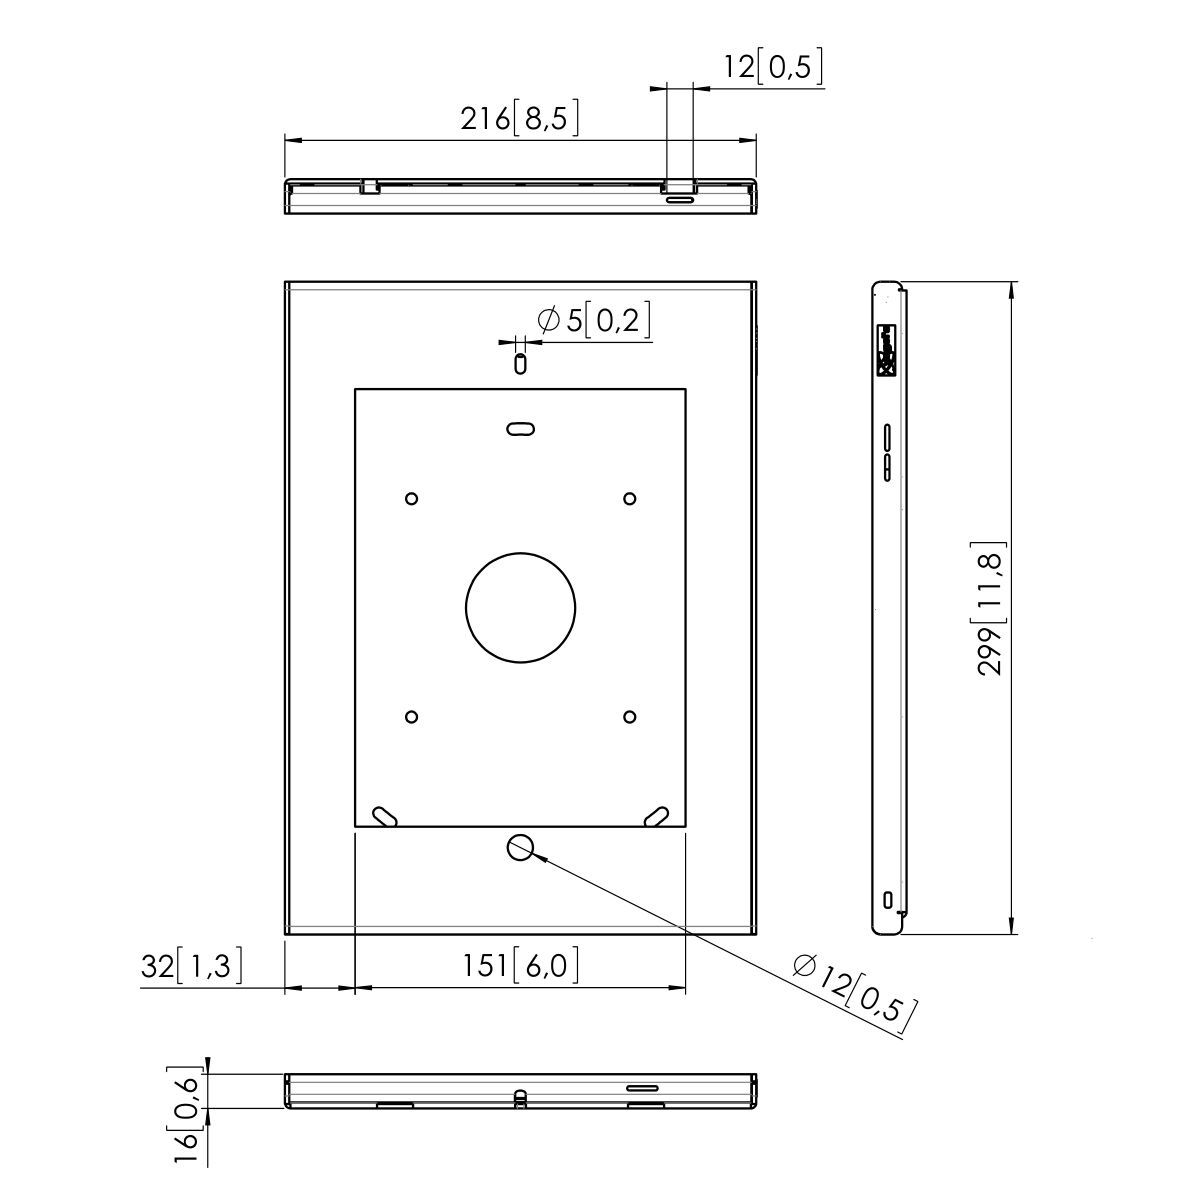 Vogel's PTS 1205 TabLock pour iPad 2 / 3 / 4 - Dimensions